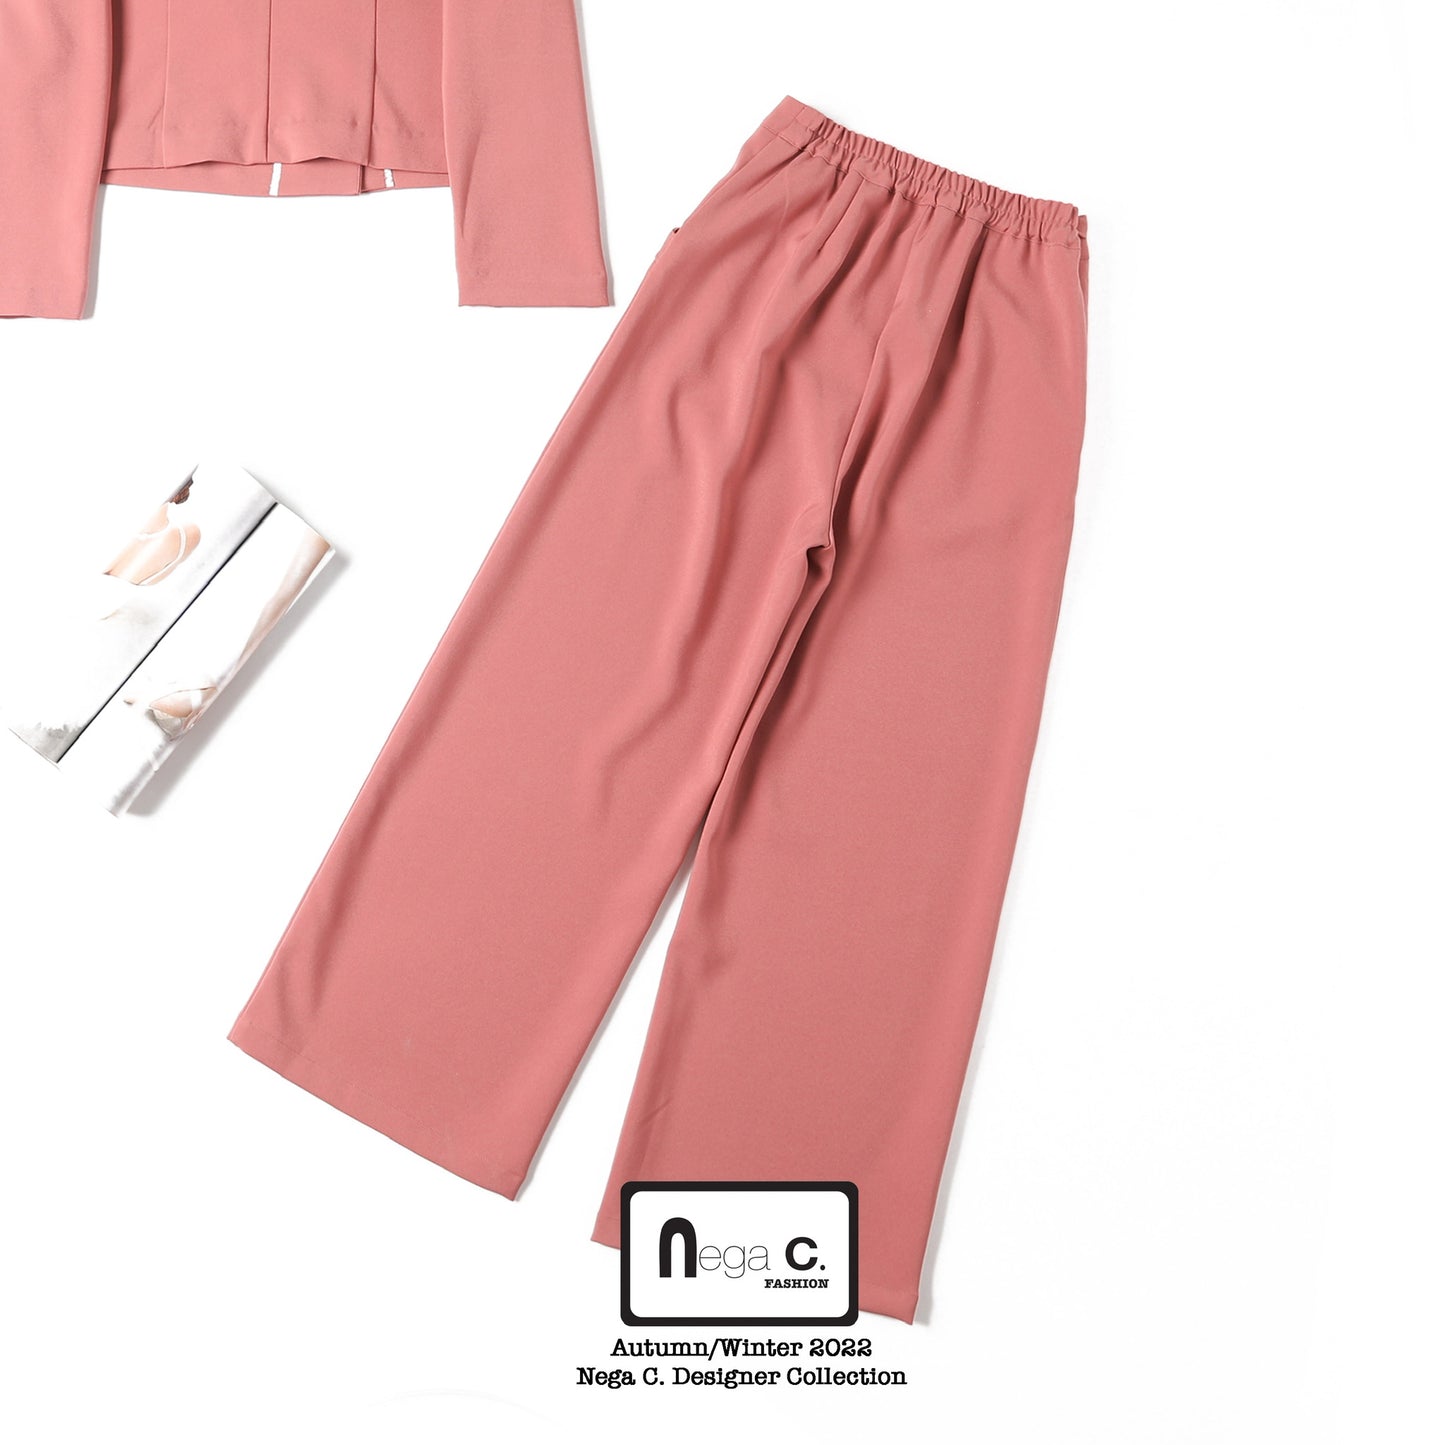 Nega C. 純色荷葉邊闊版西褲| 粉紅色| 無彈| 無裡襯